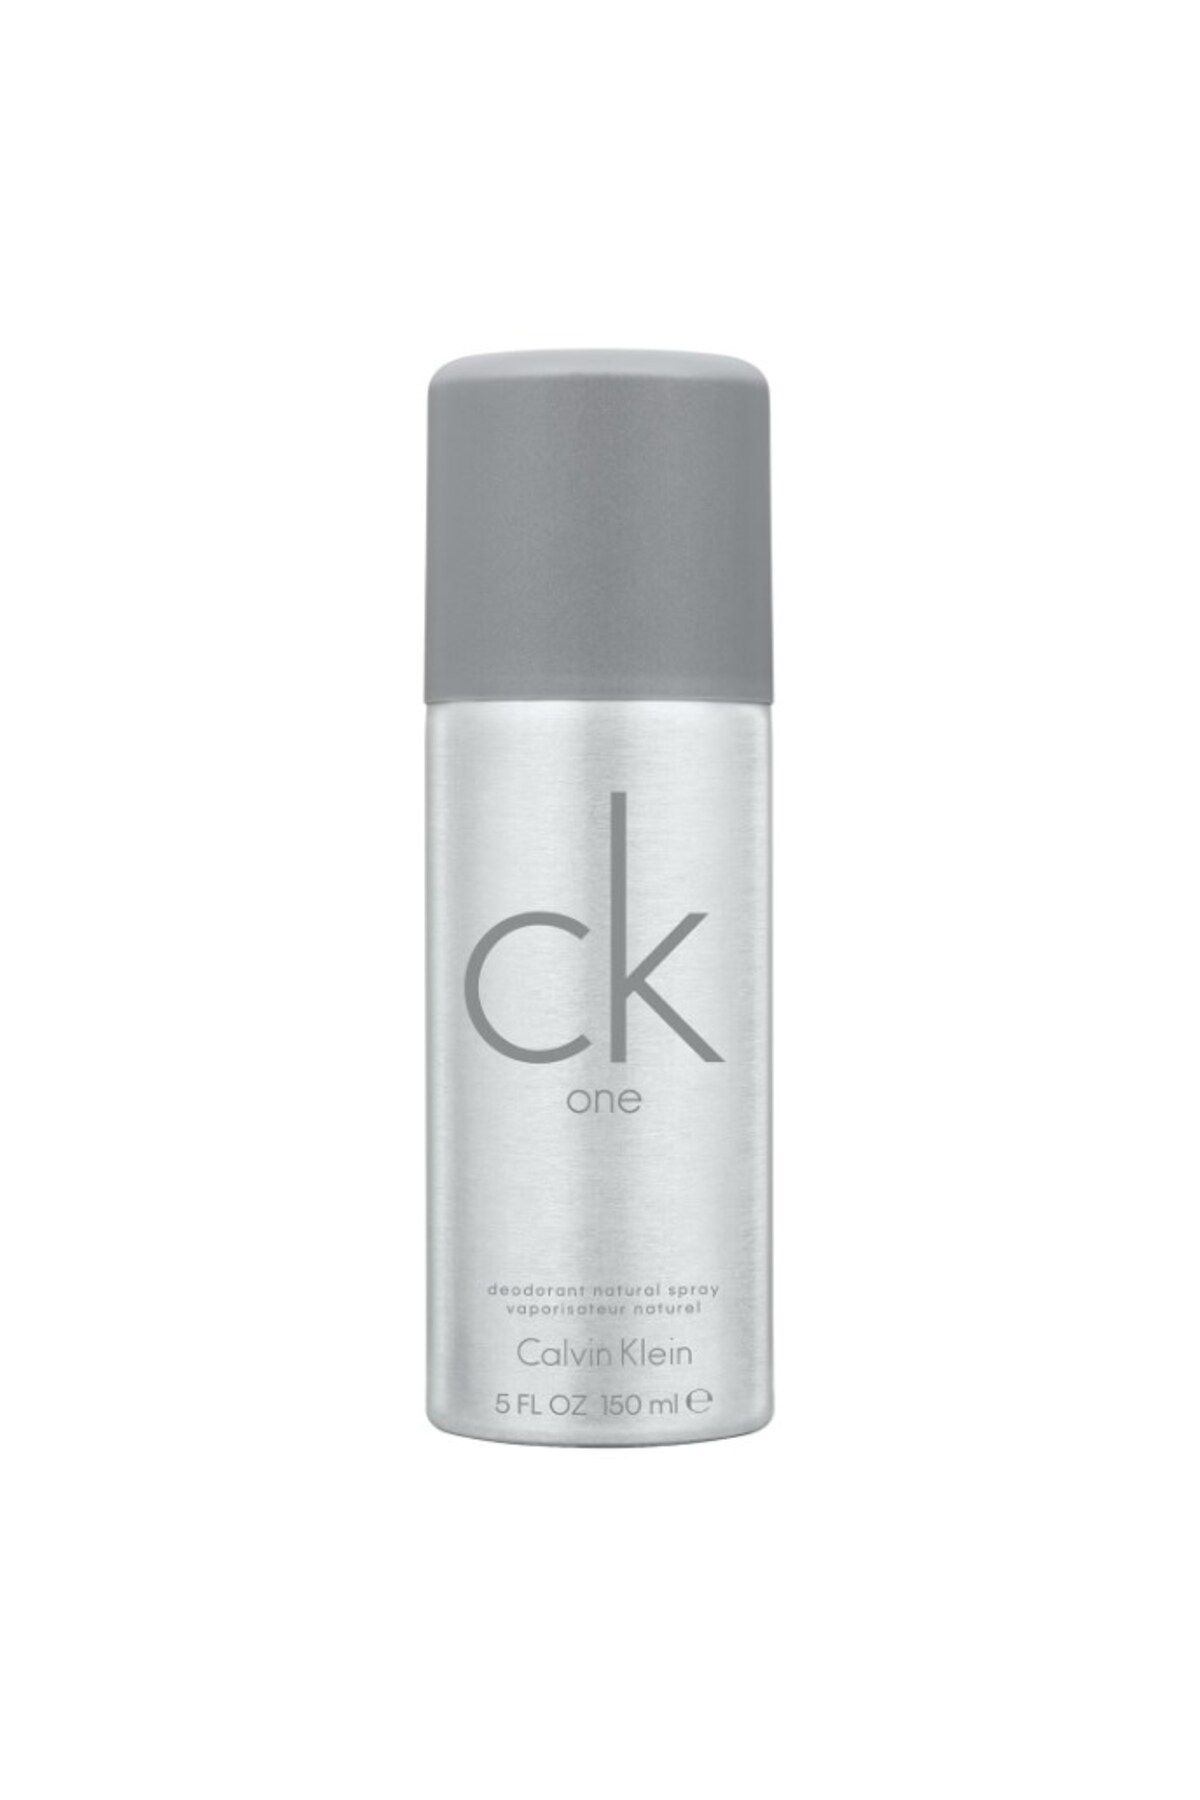 Calvin Klein Ck One - Deodorant Sprey Cesaret, Risk Alma İle Başlar! 150 Ml